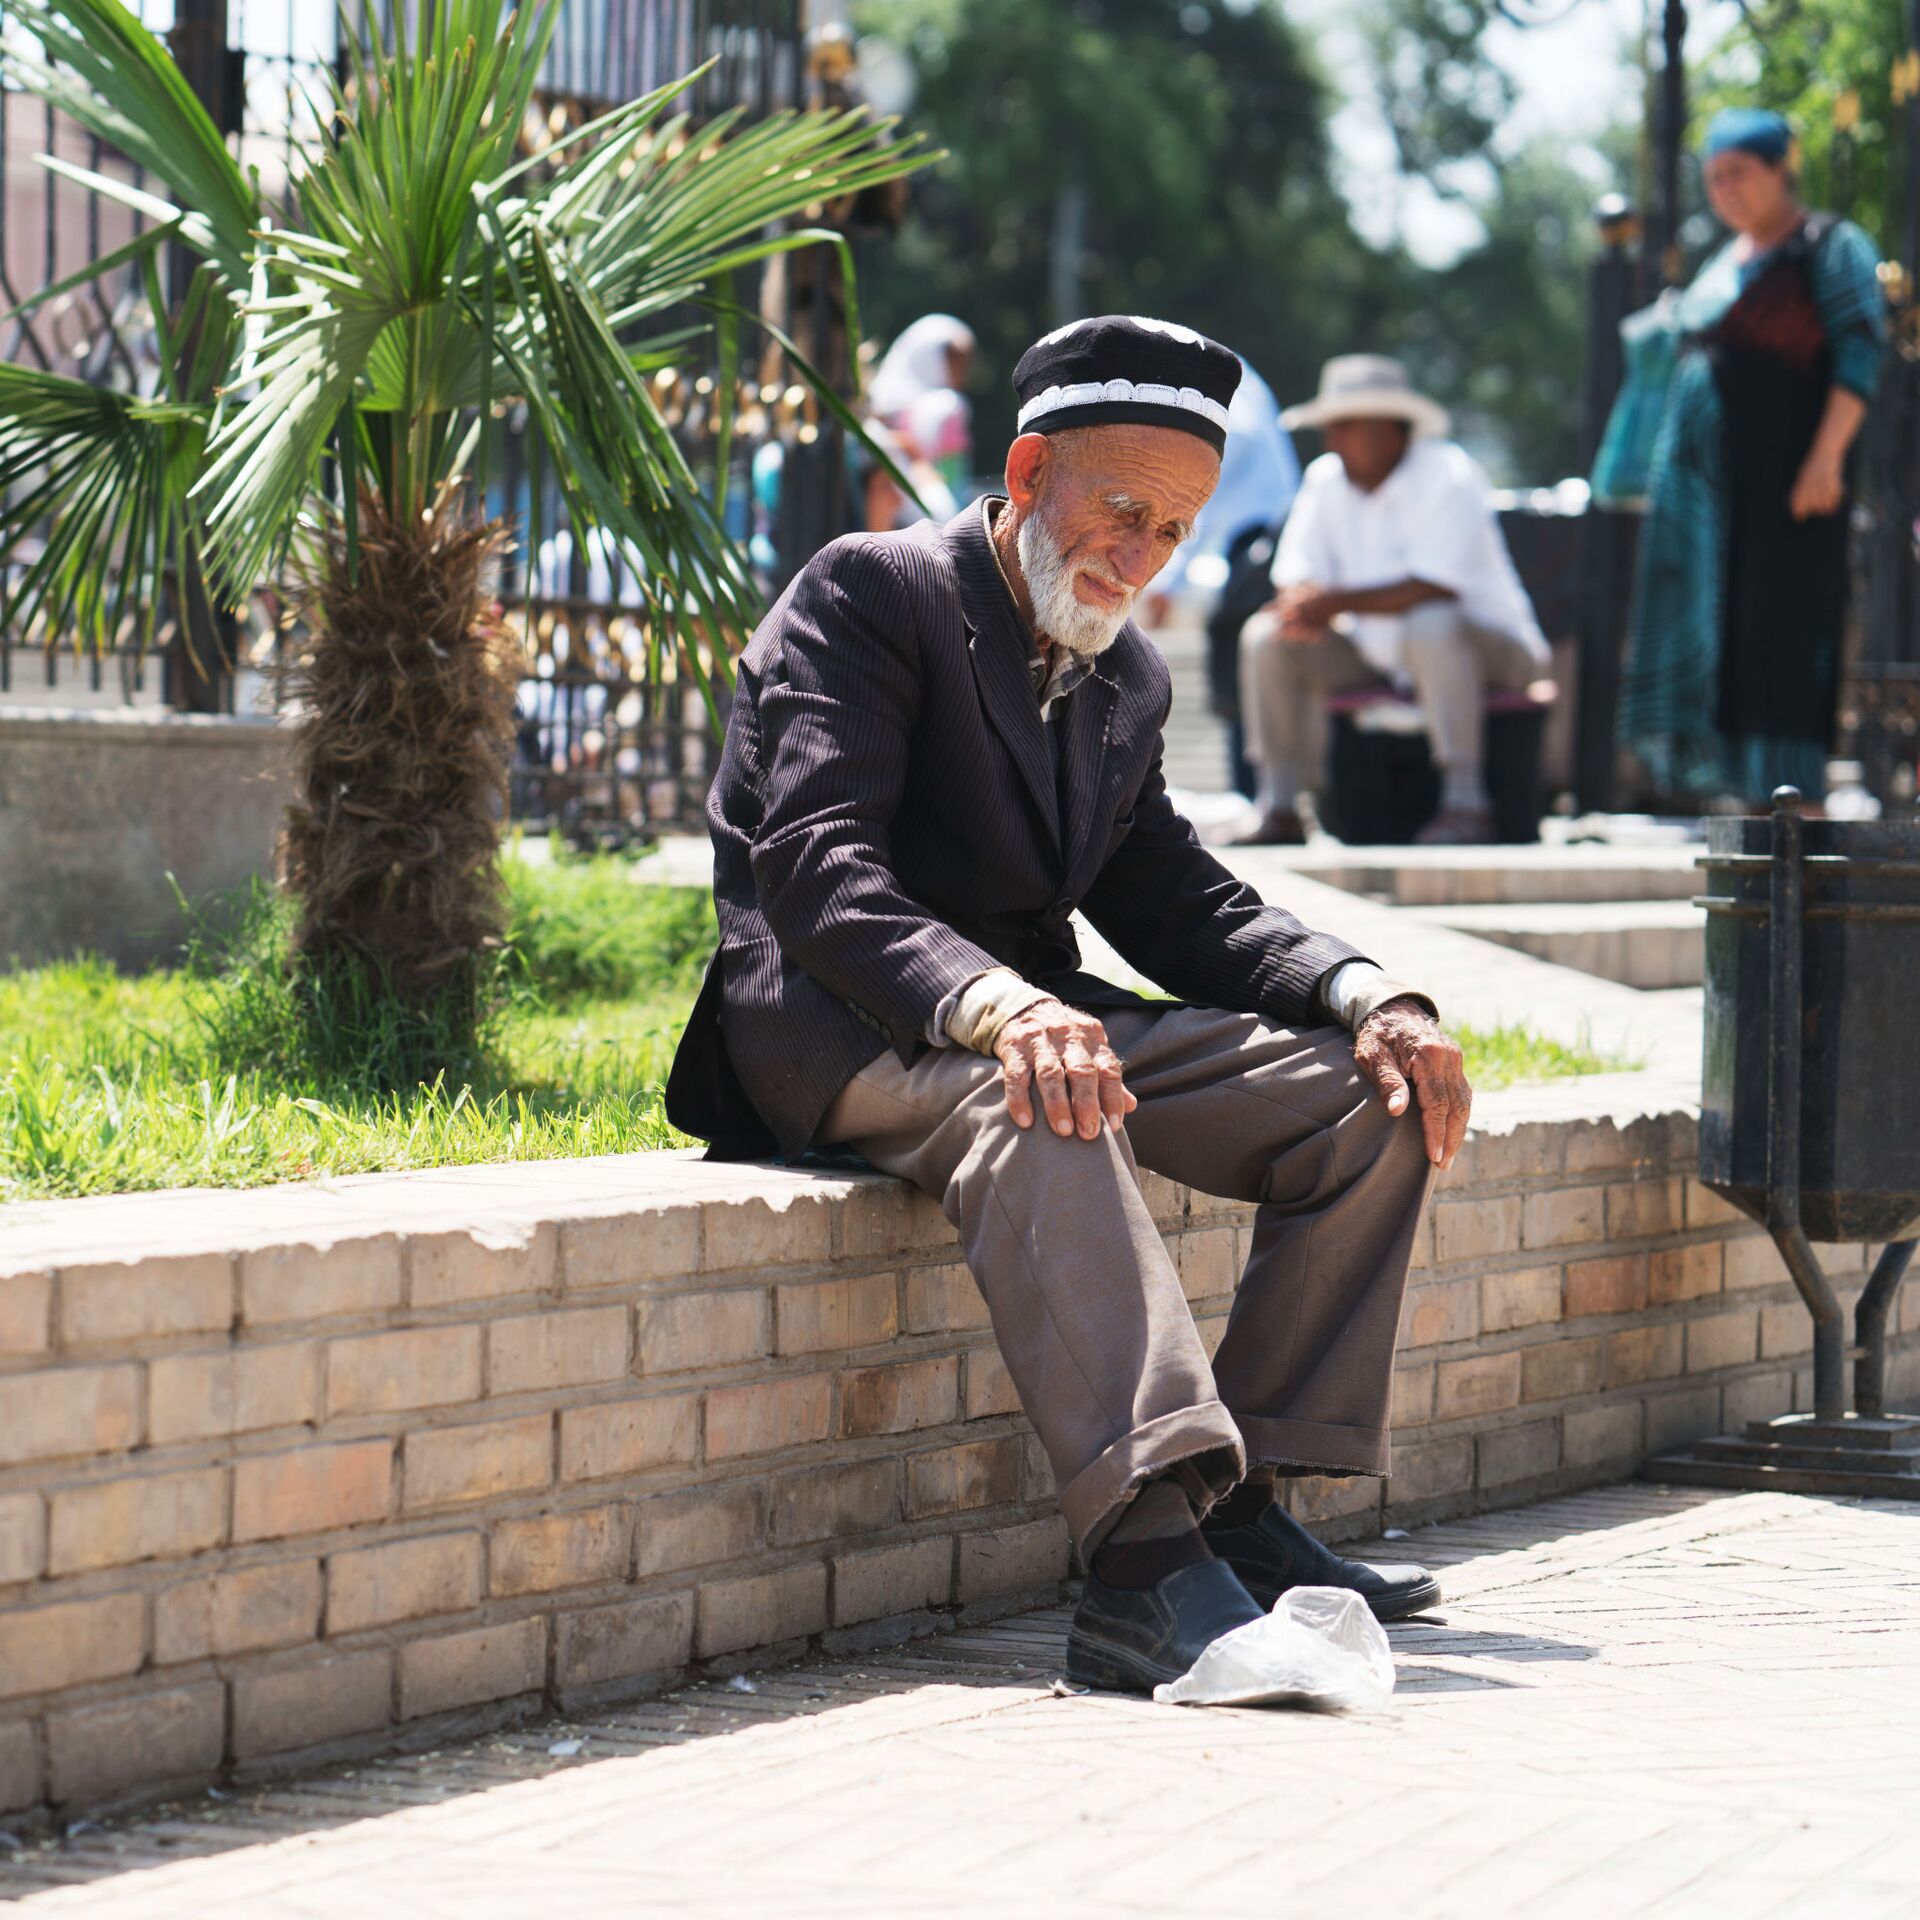 Долгожители Таджикистан. Мигранты из Таджикистана пенсия. Ҷамолидин амулозода. Создай таджикский